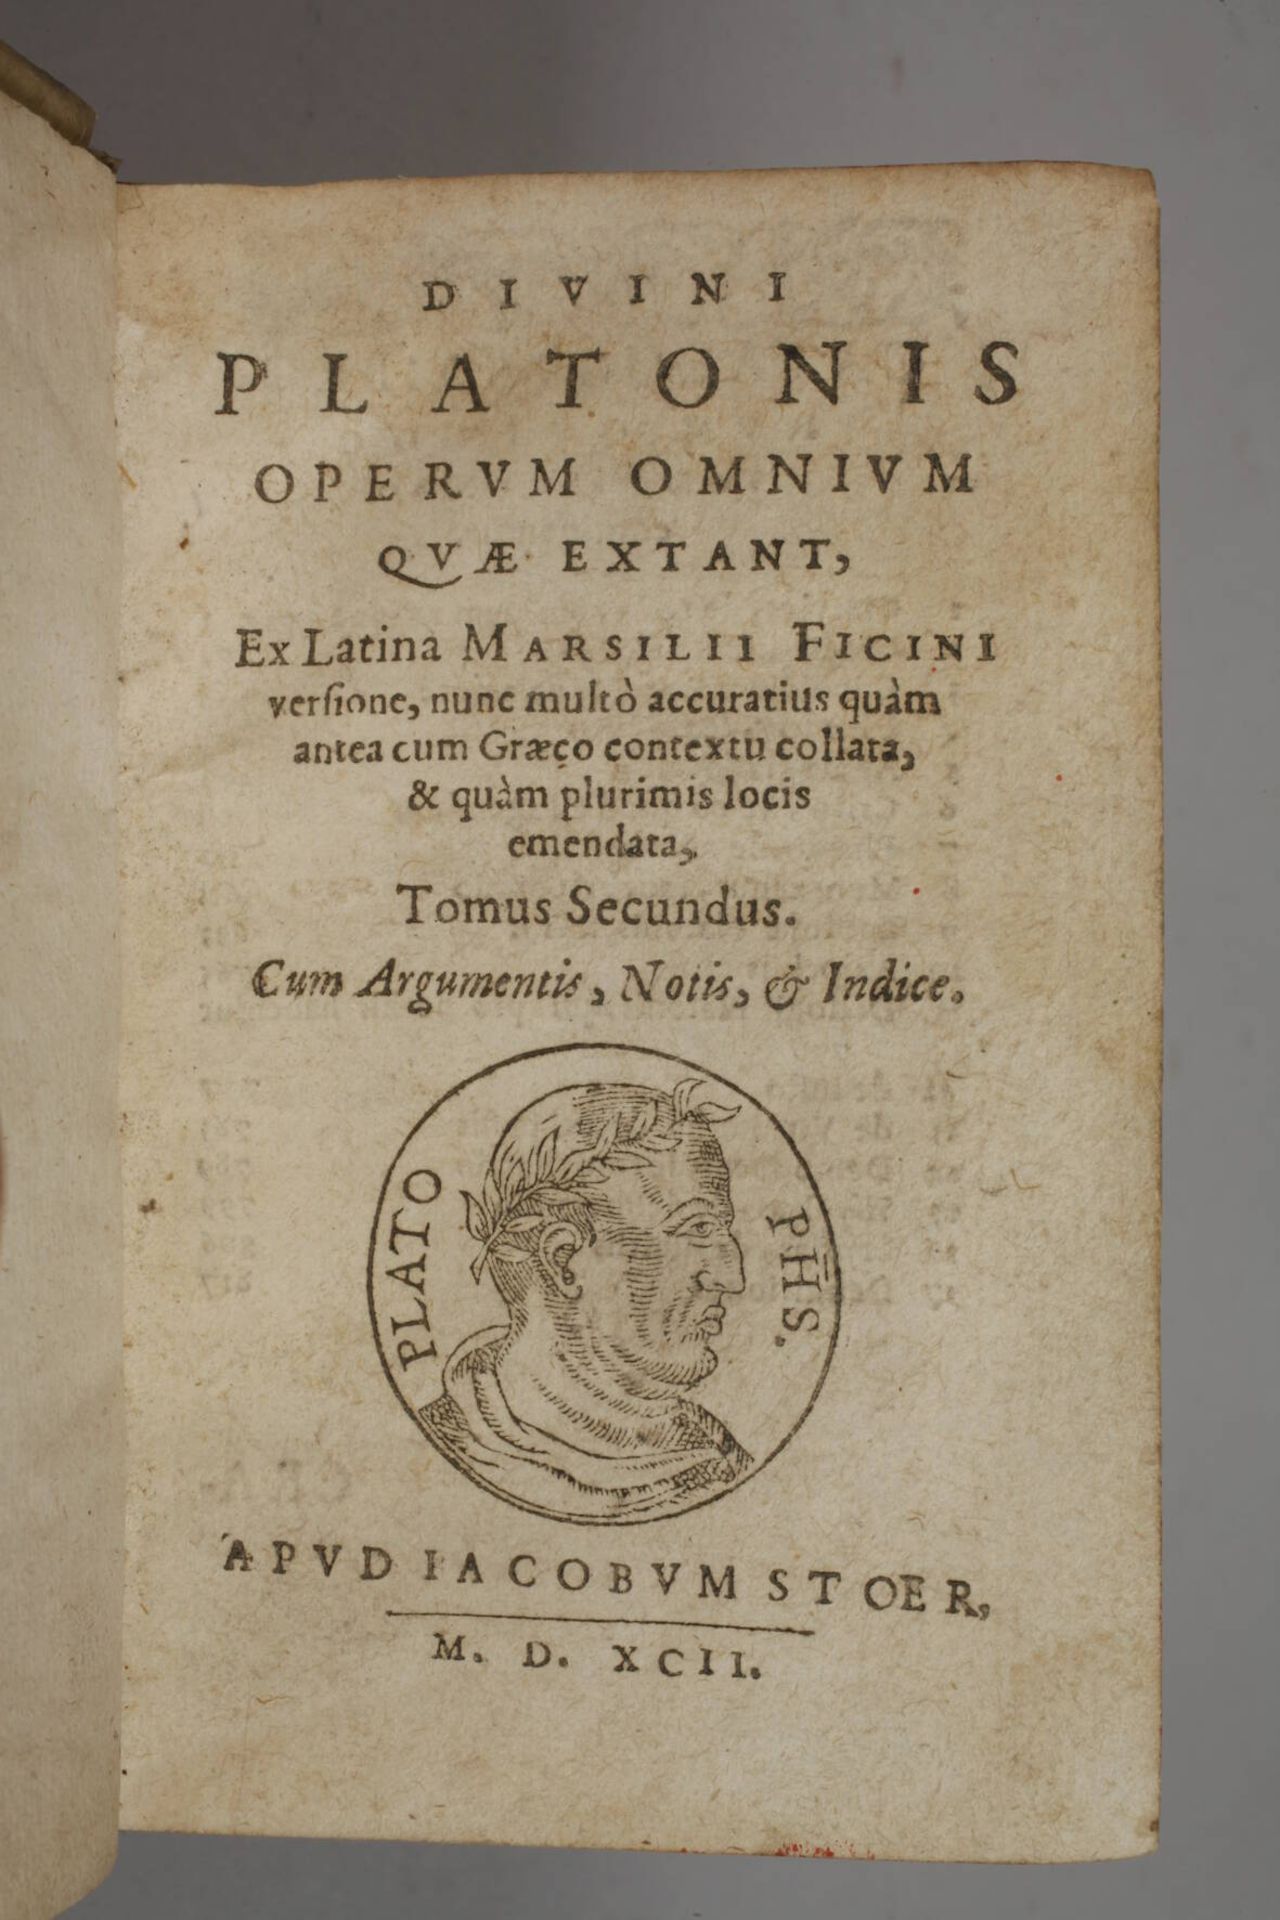 Divini Platonis Operum Omnium 1592 - Image 2 of 6